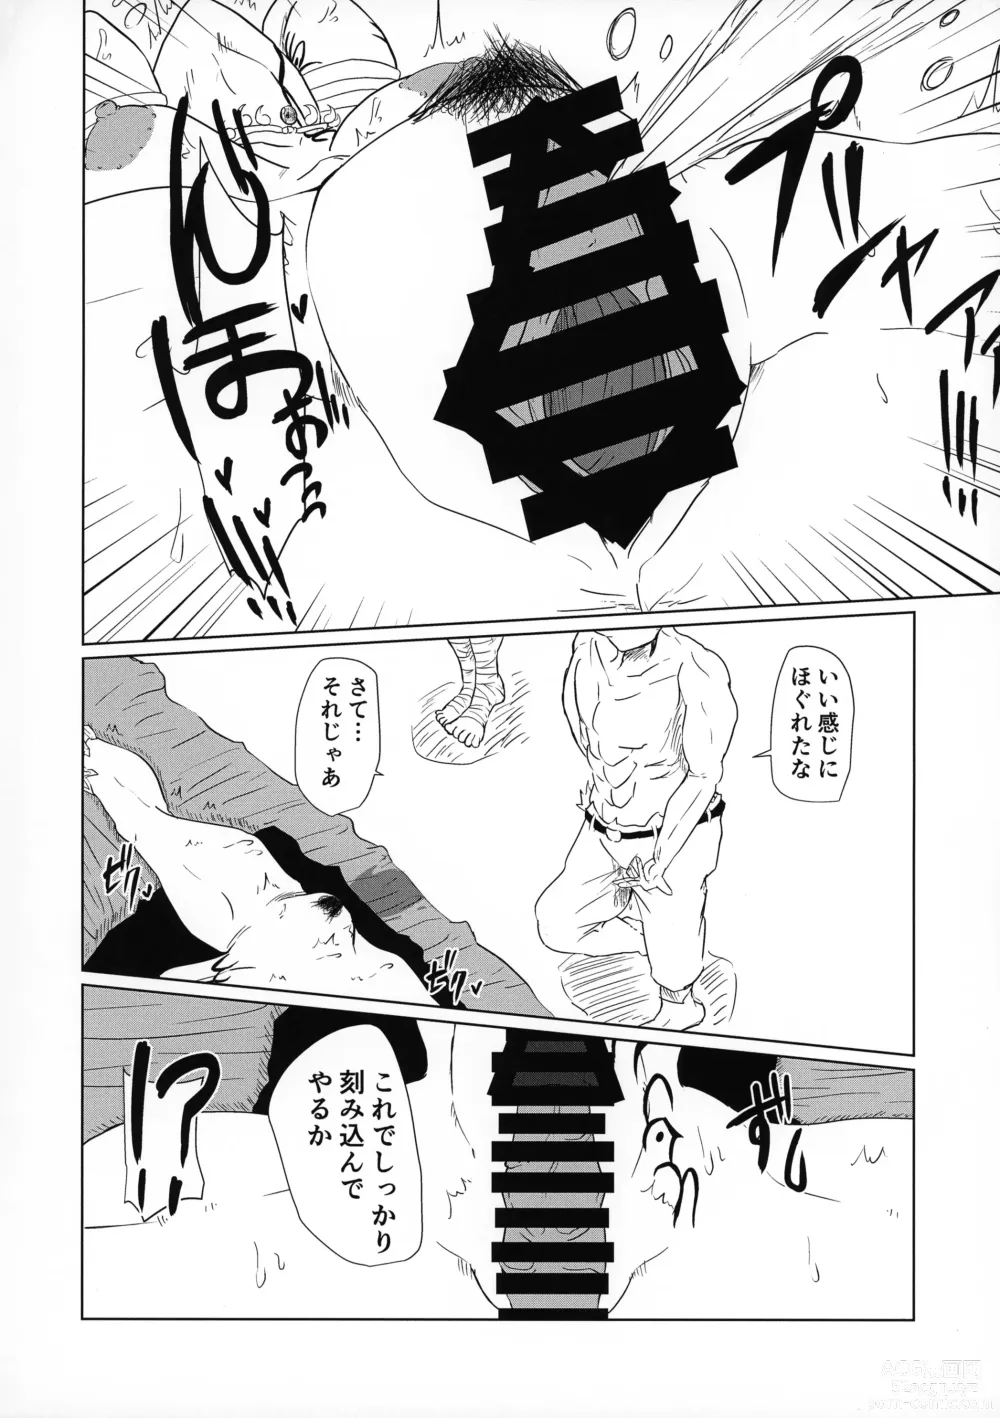 Page 7 of doujinshi Ochita Sato